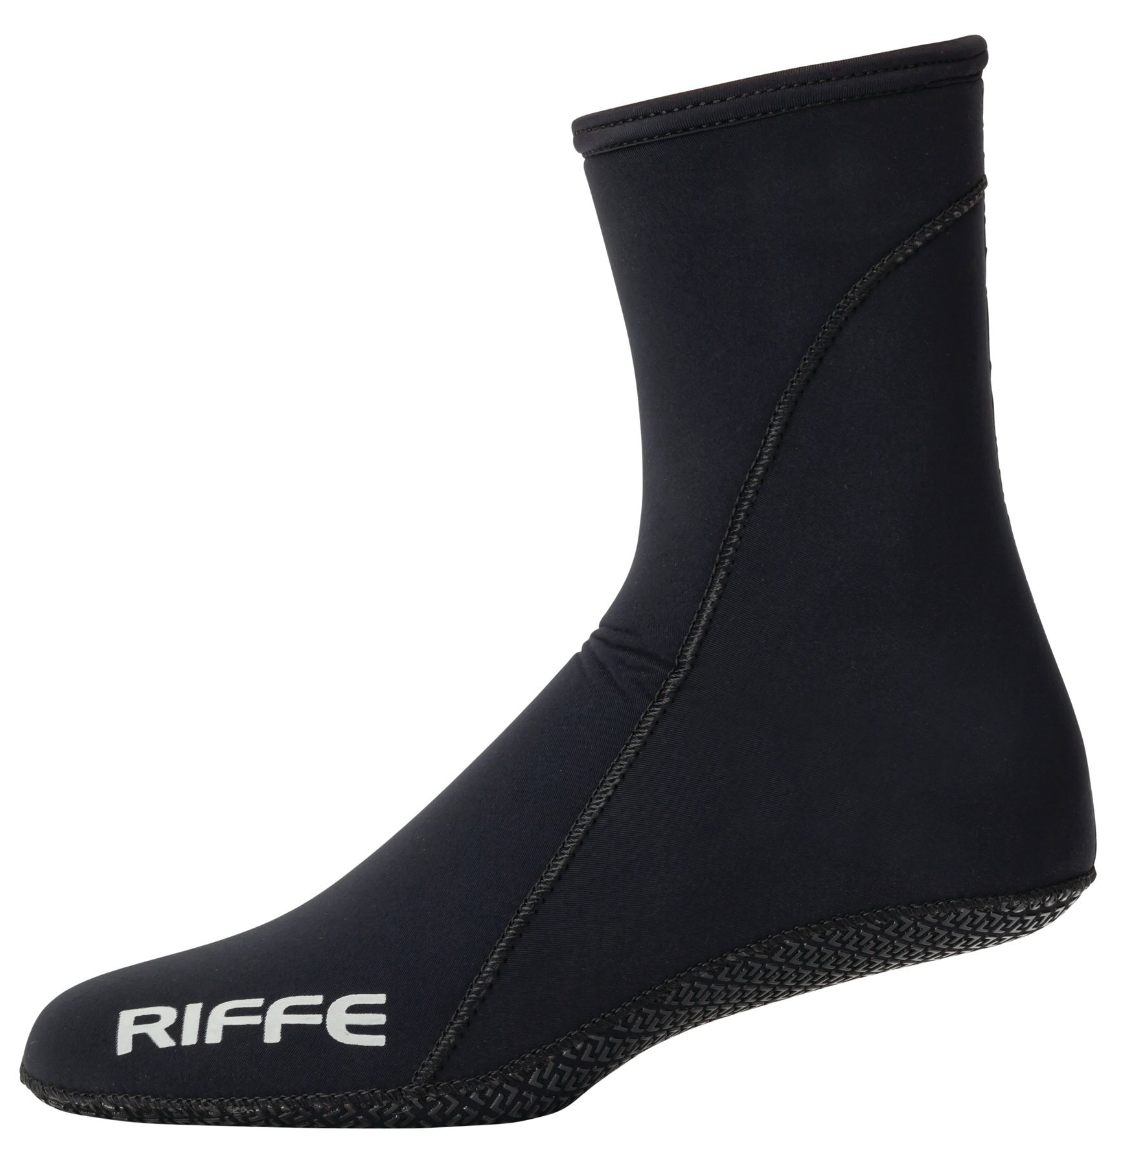 Riffe Fin Socks - 2mm